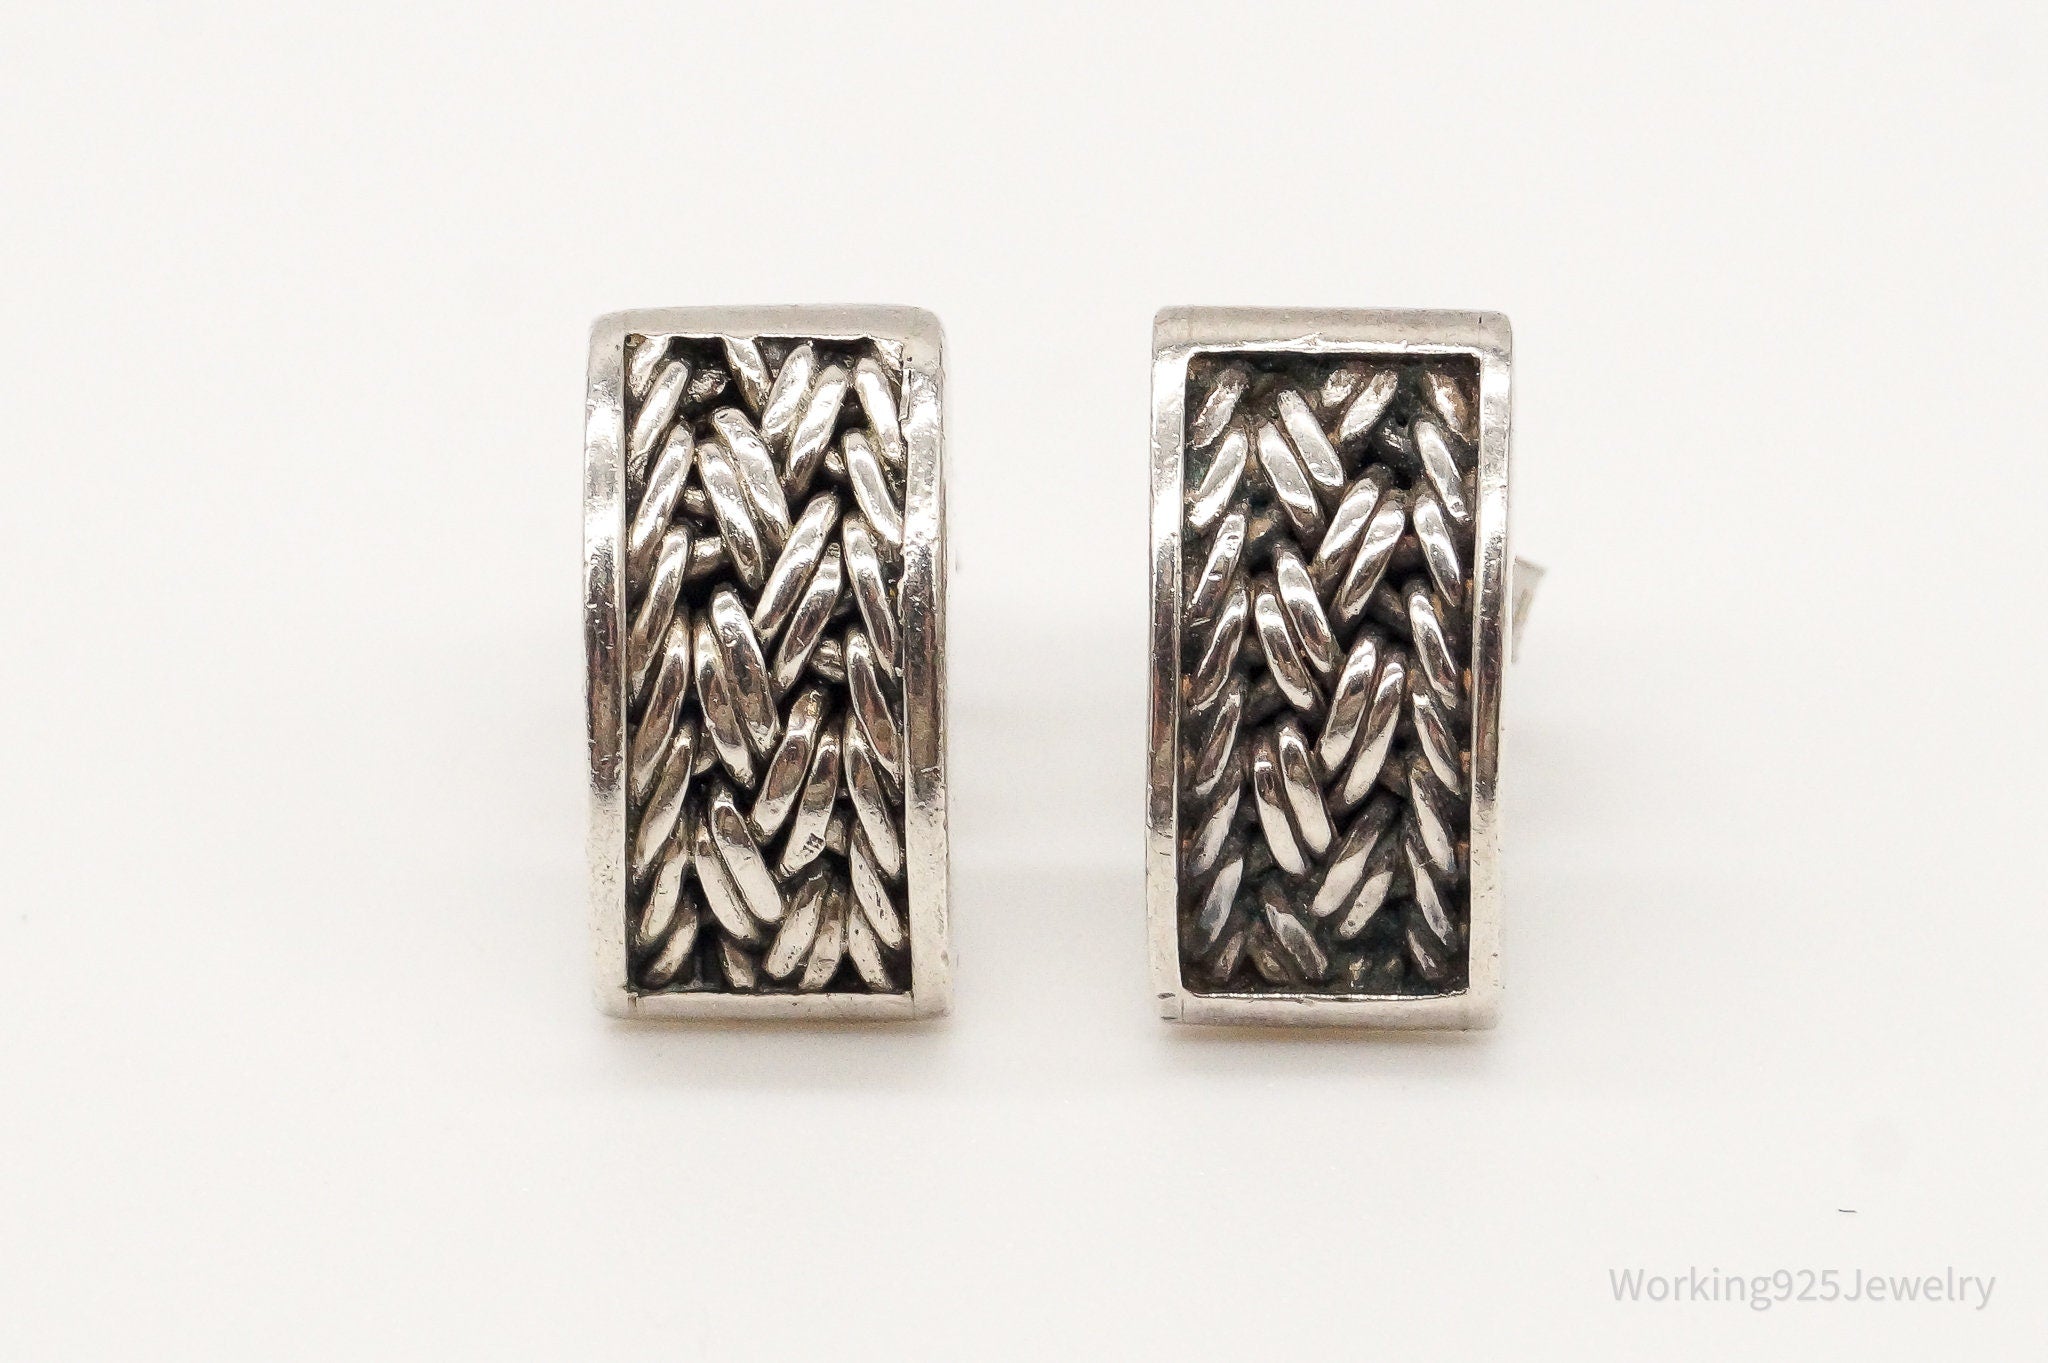 Designer Lois Hill Woven Sterling Silver Earrings